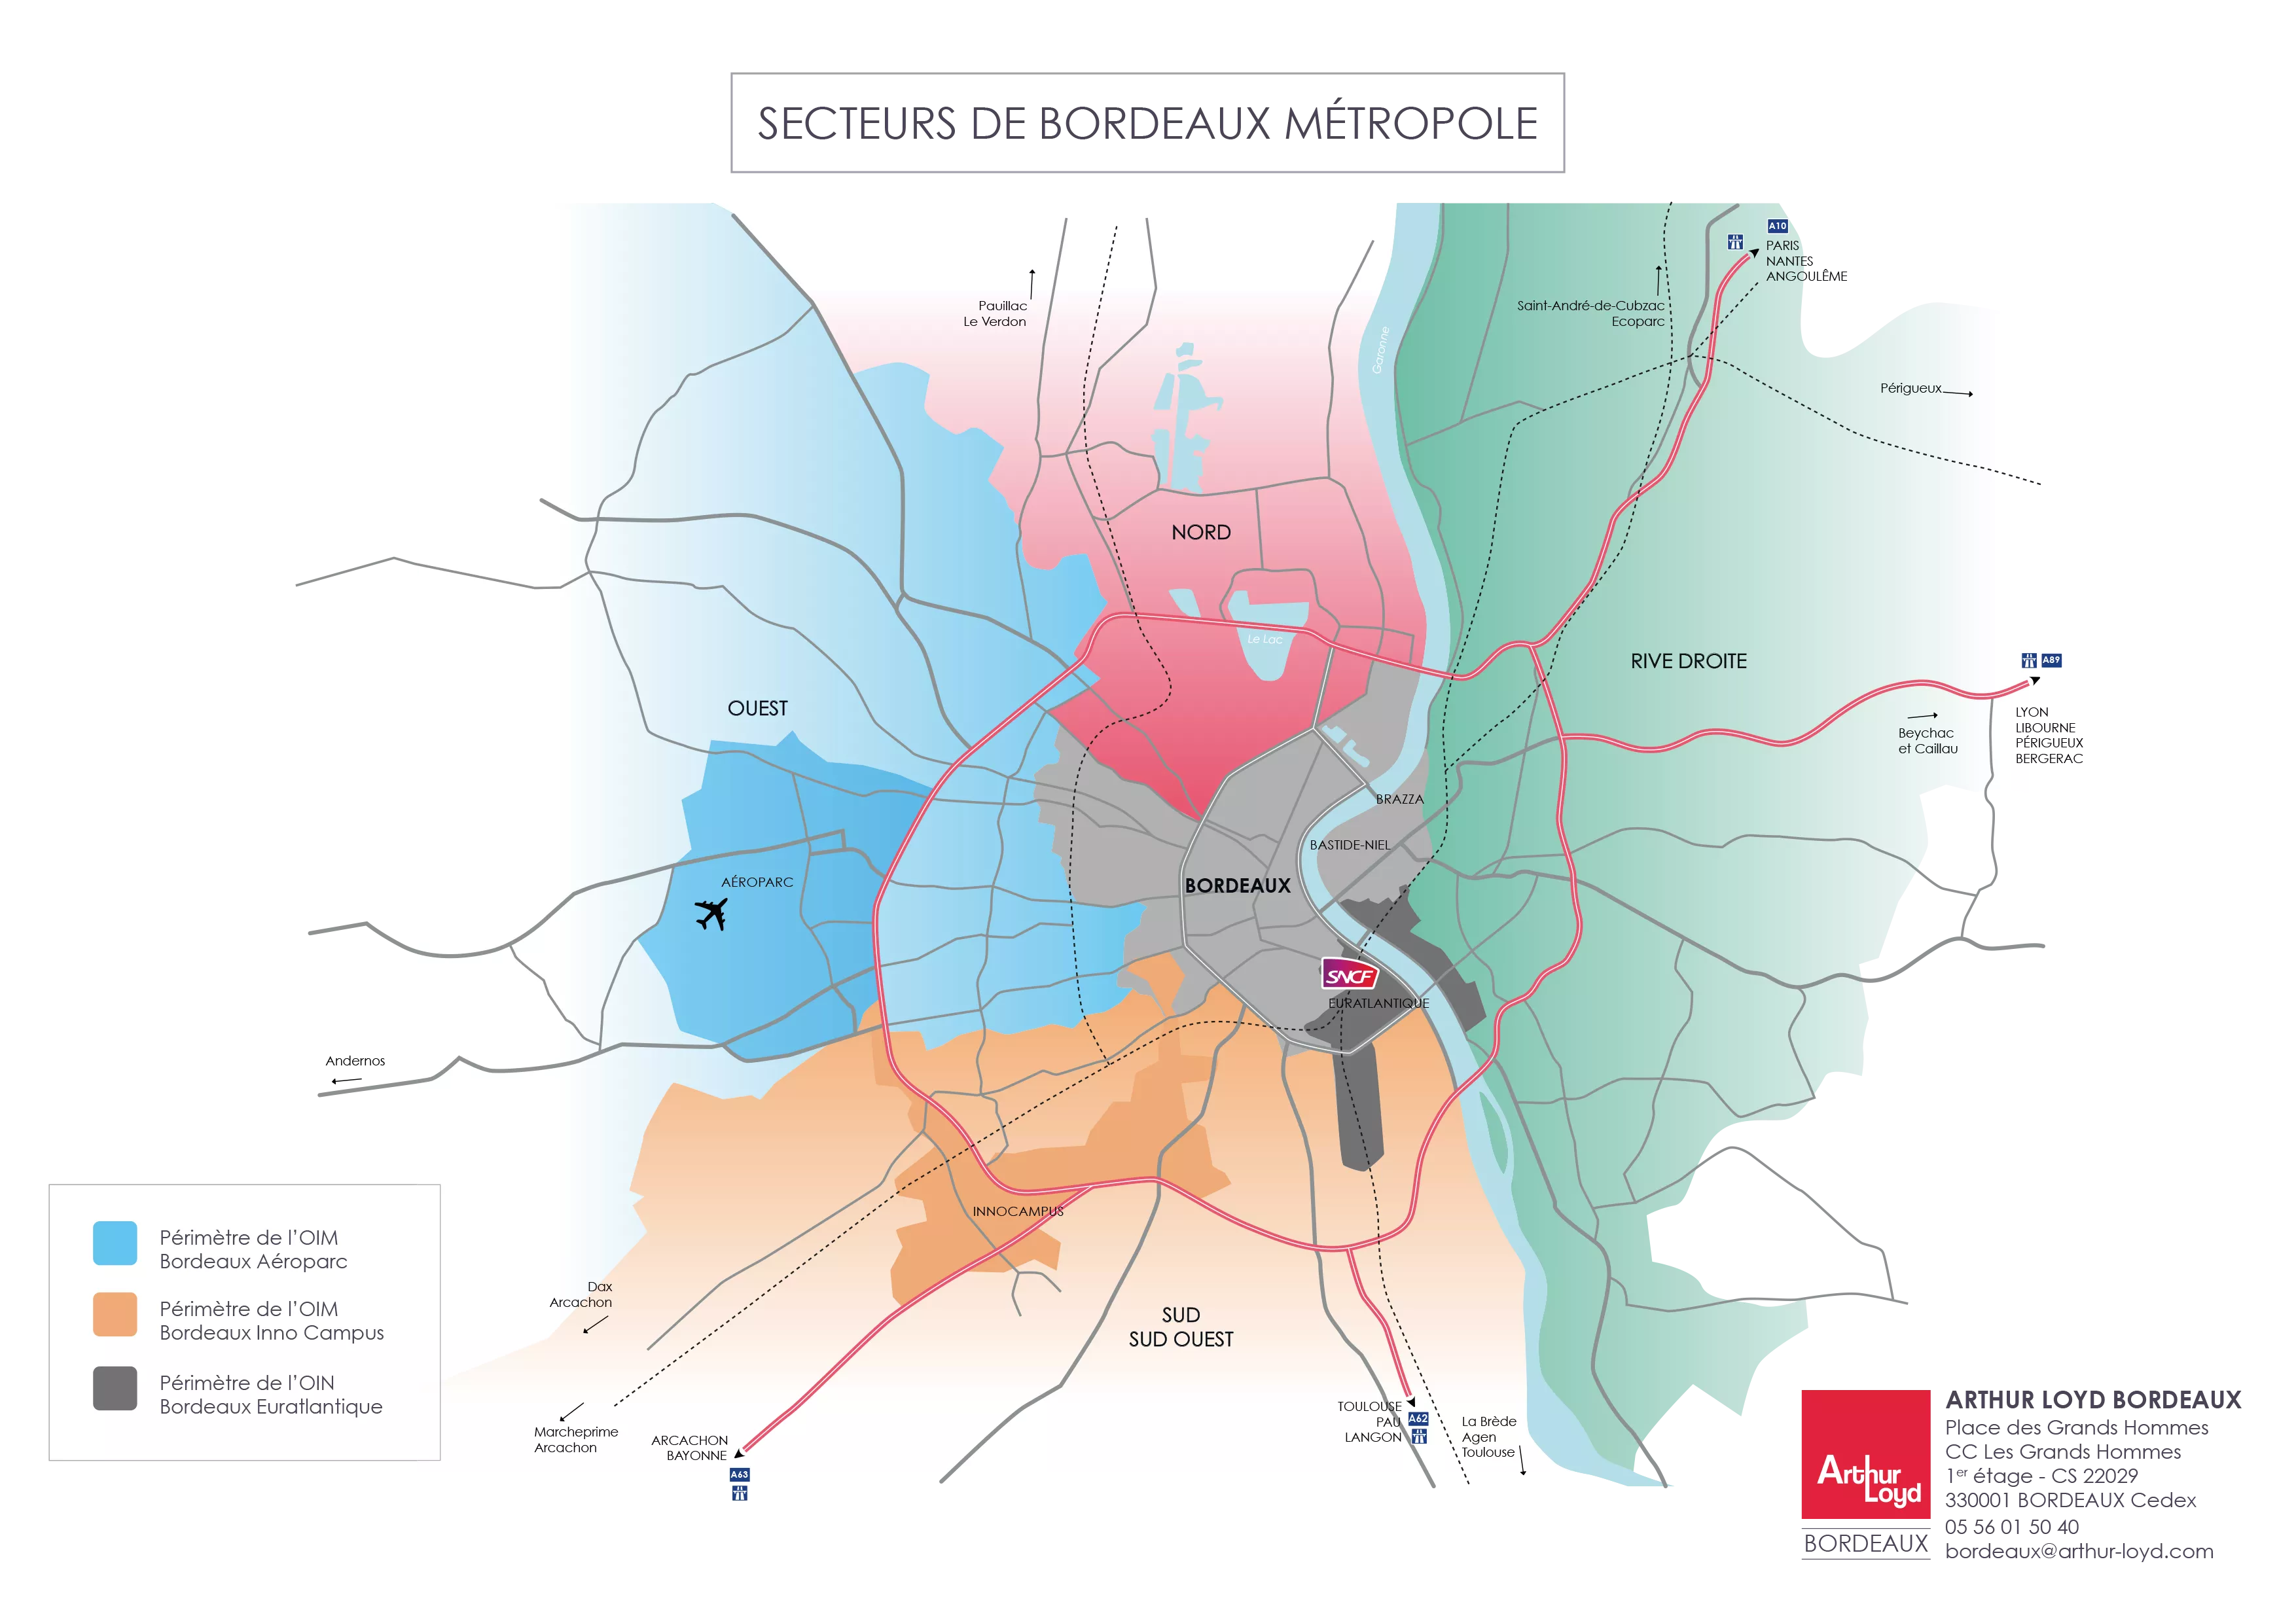 Carte secteurs Bordeaux Métropole